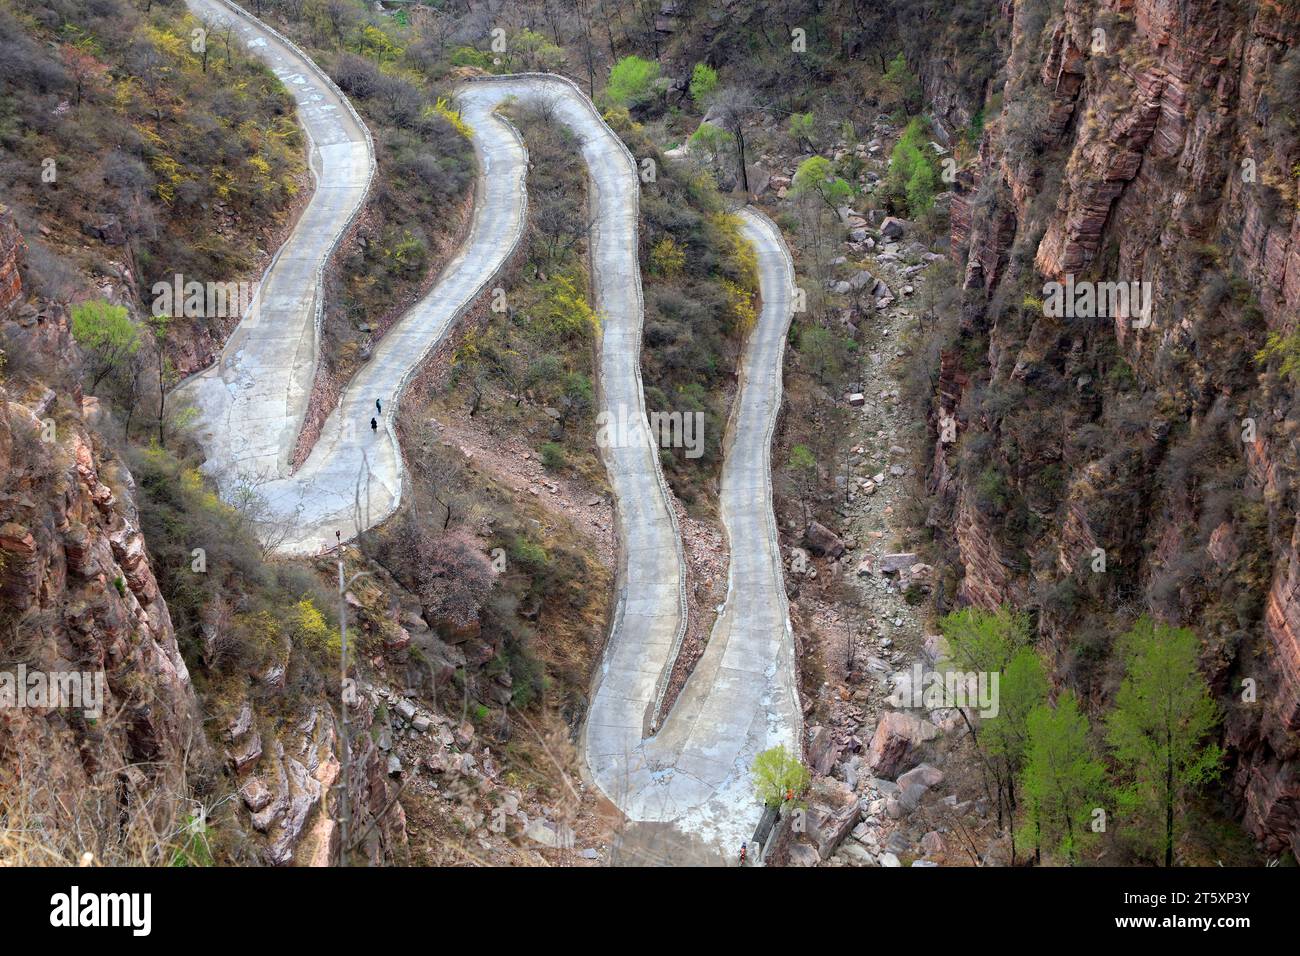 Wanxian mountain Scenic spot winding road, China Stock Photo